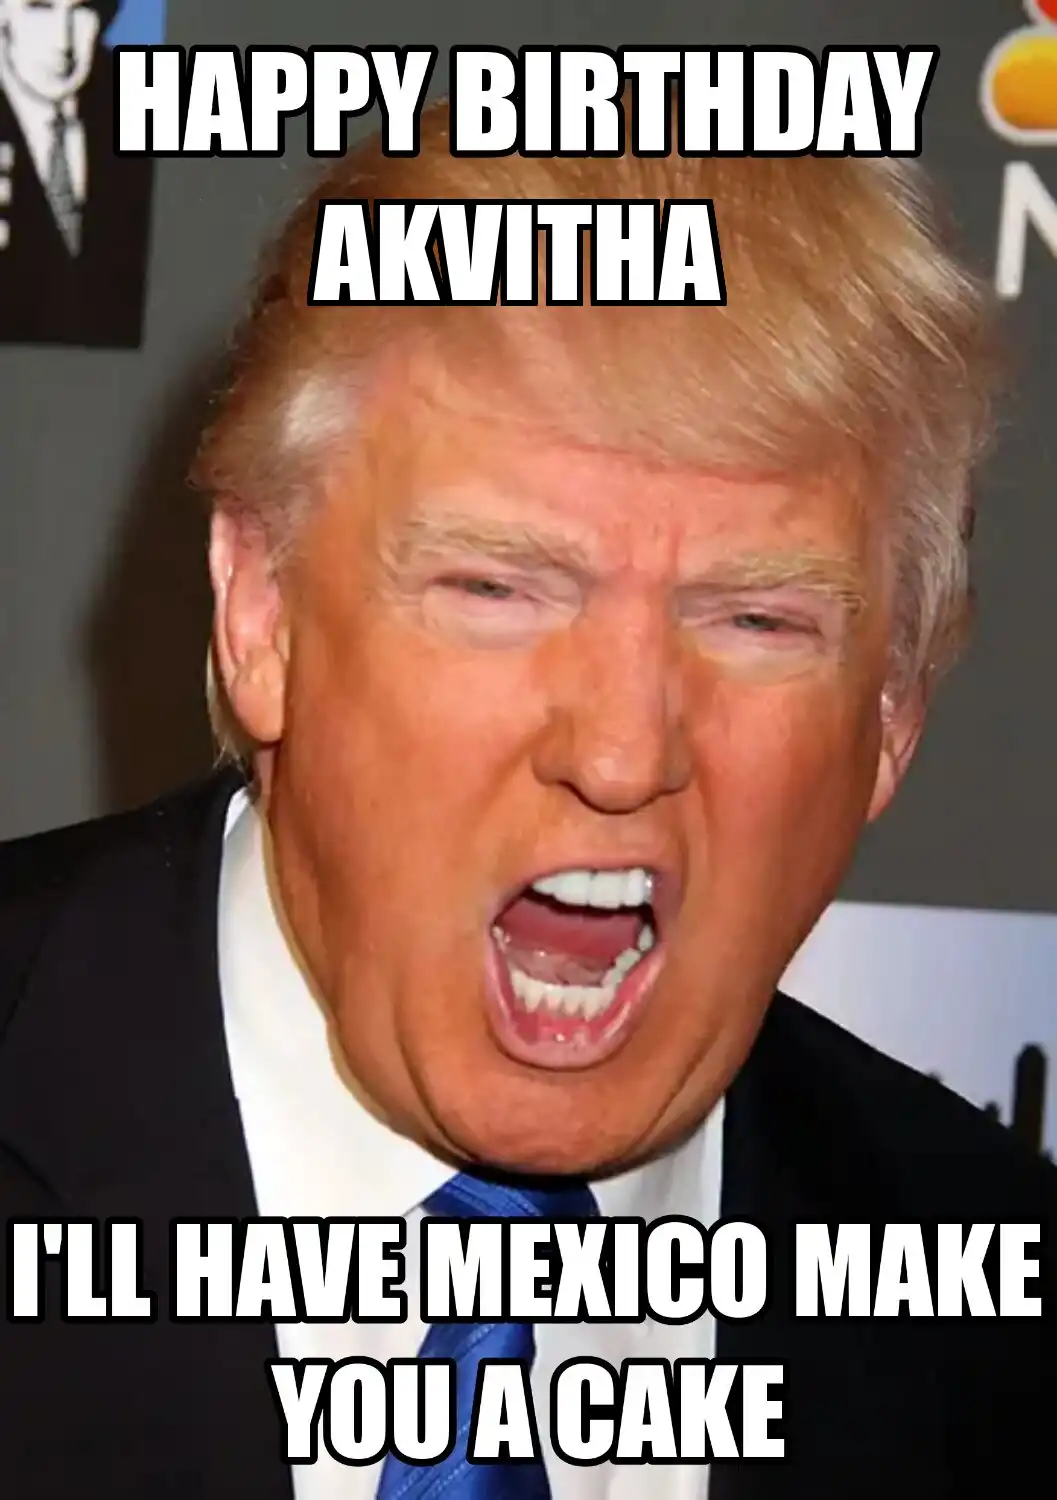 Happy Birthday Akvitha Mexico Make You A Cake Meme